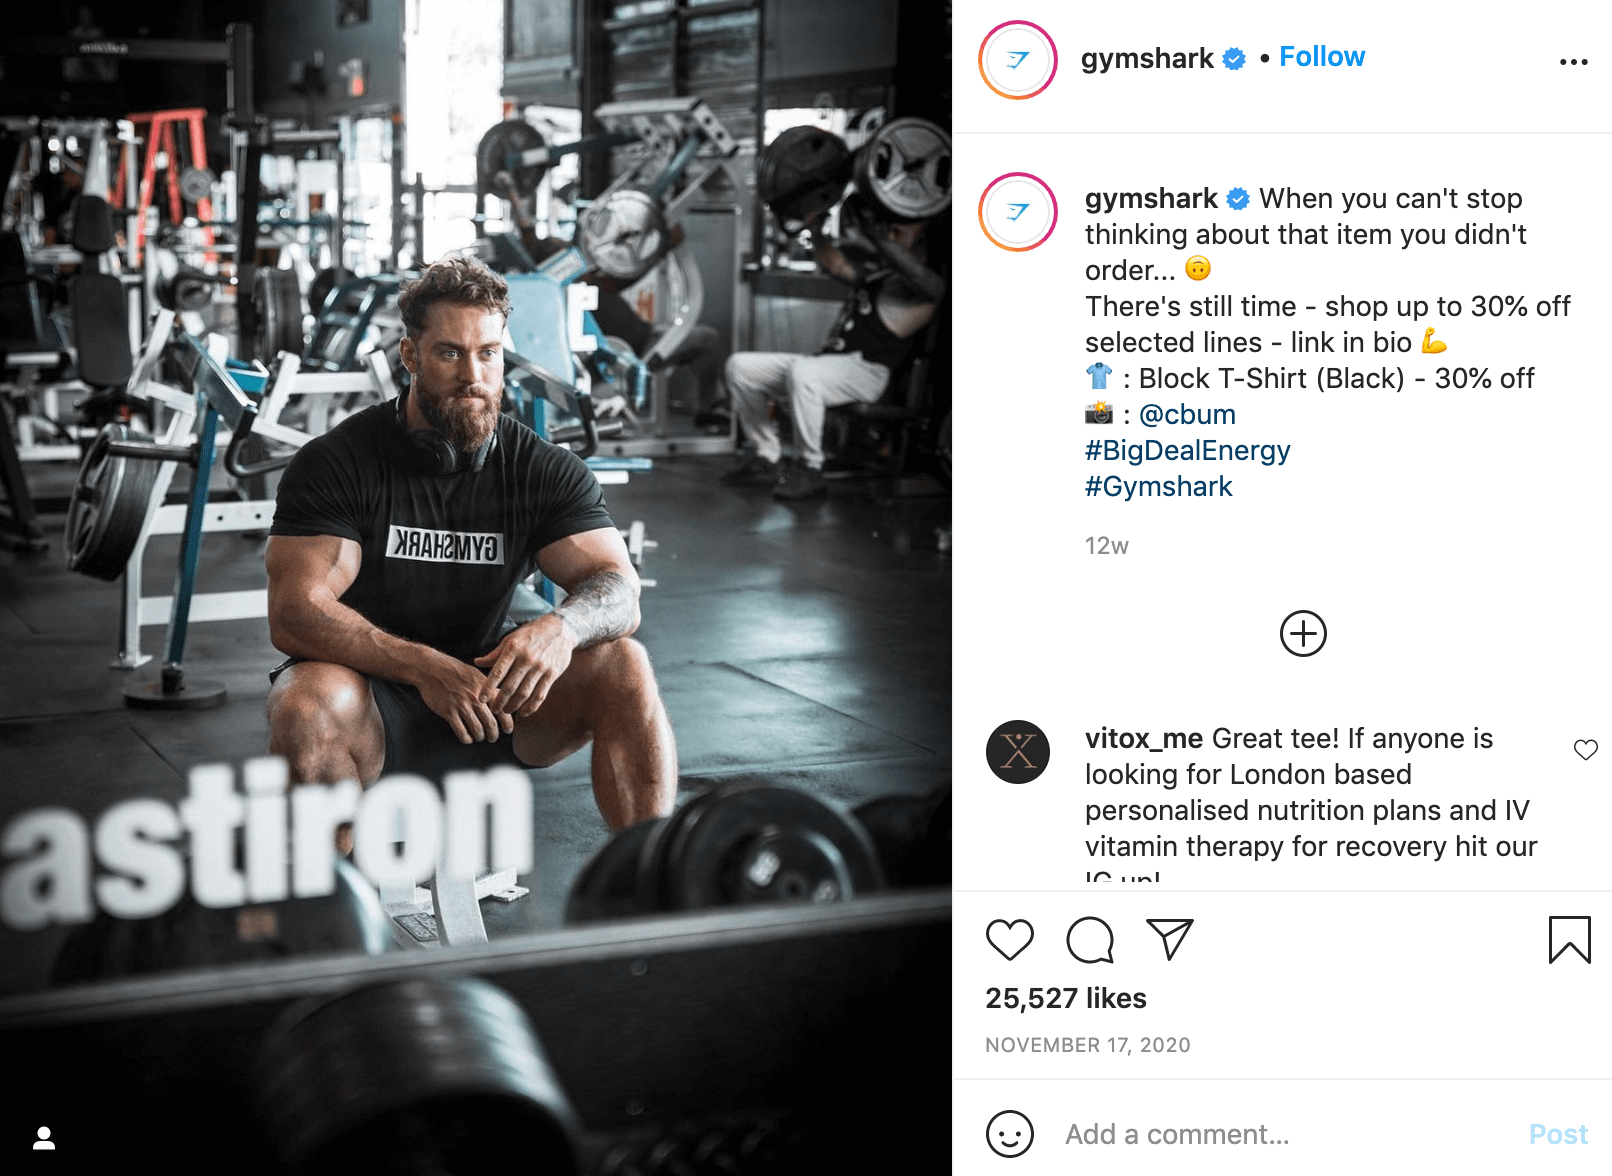 Gymshark Instagram post - promotion